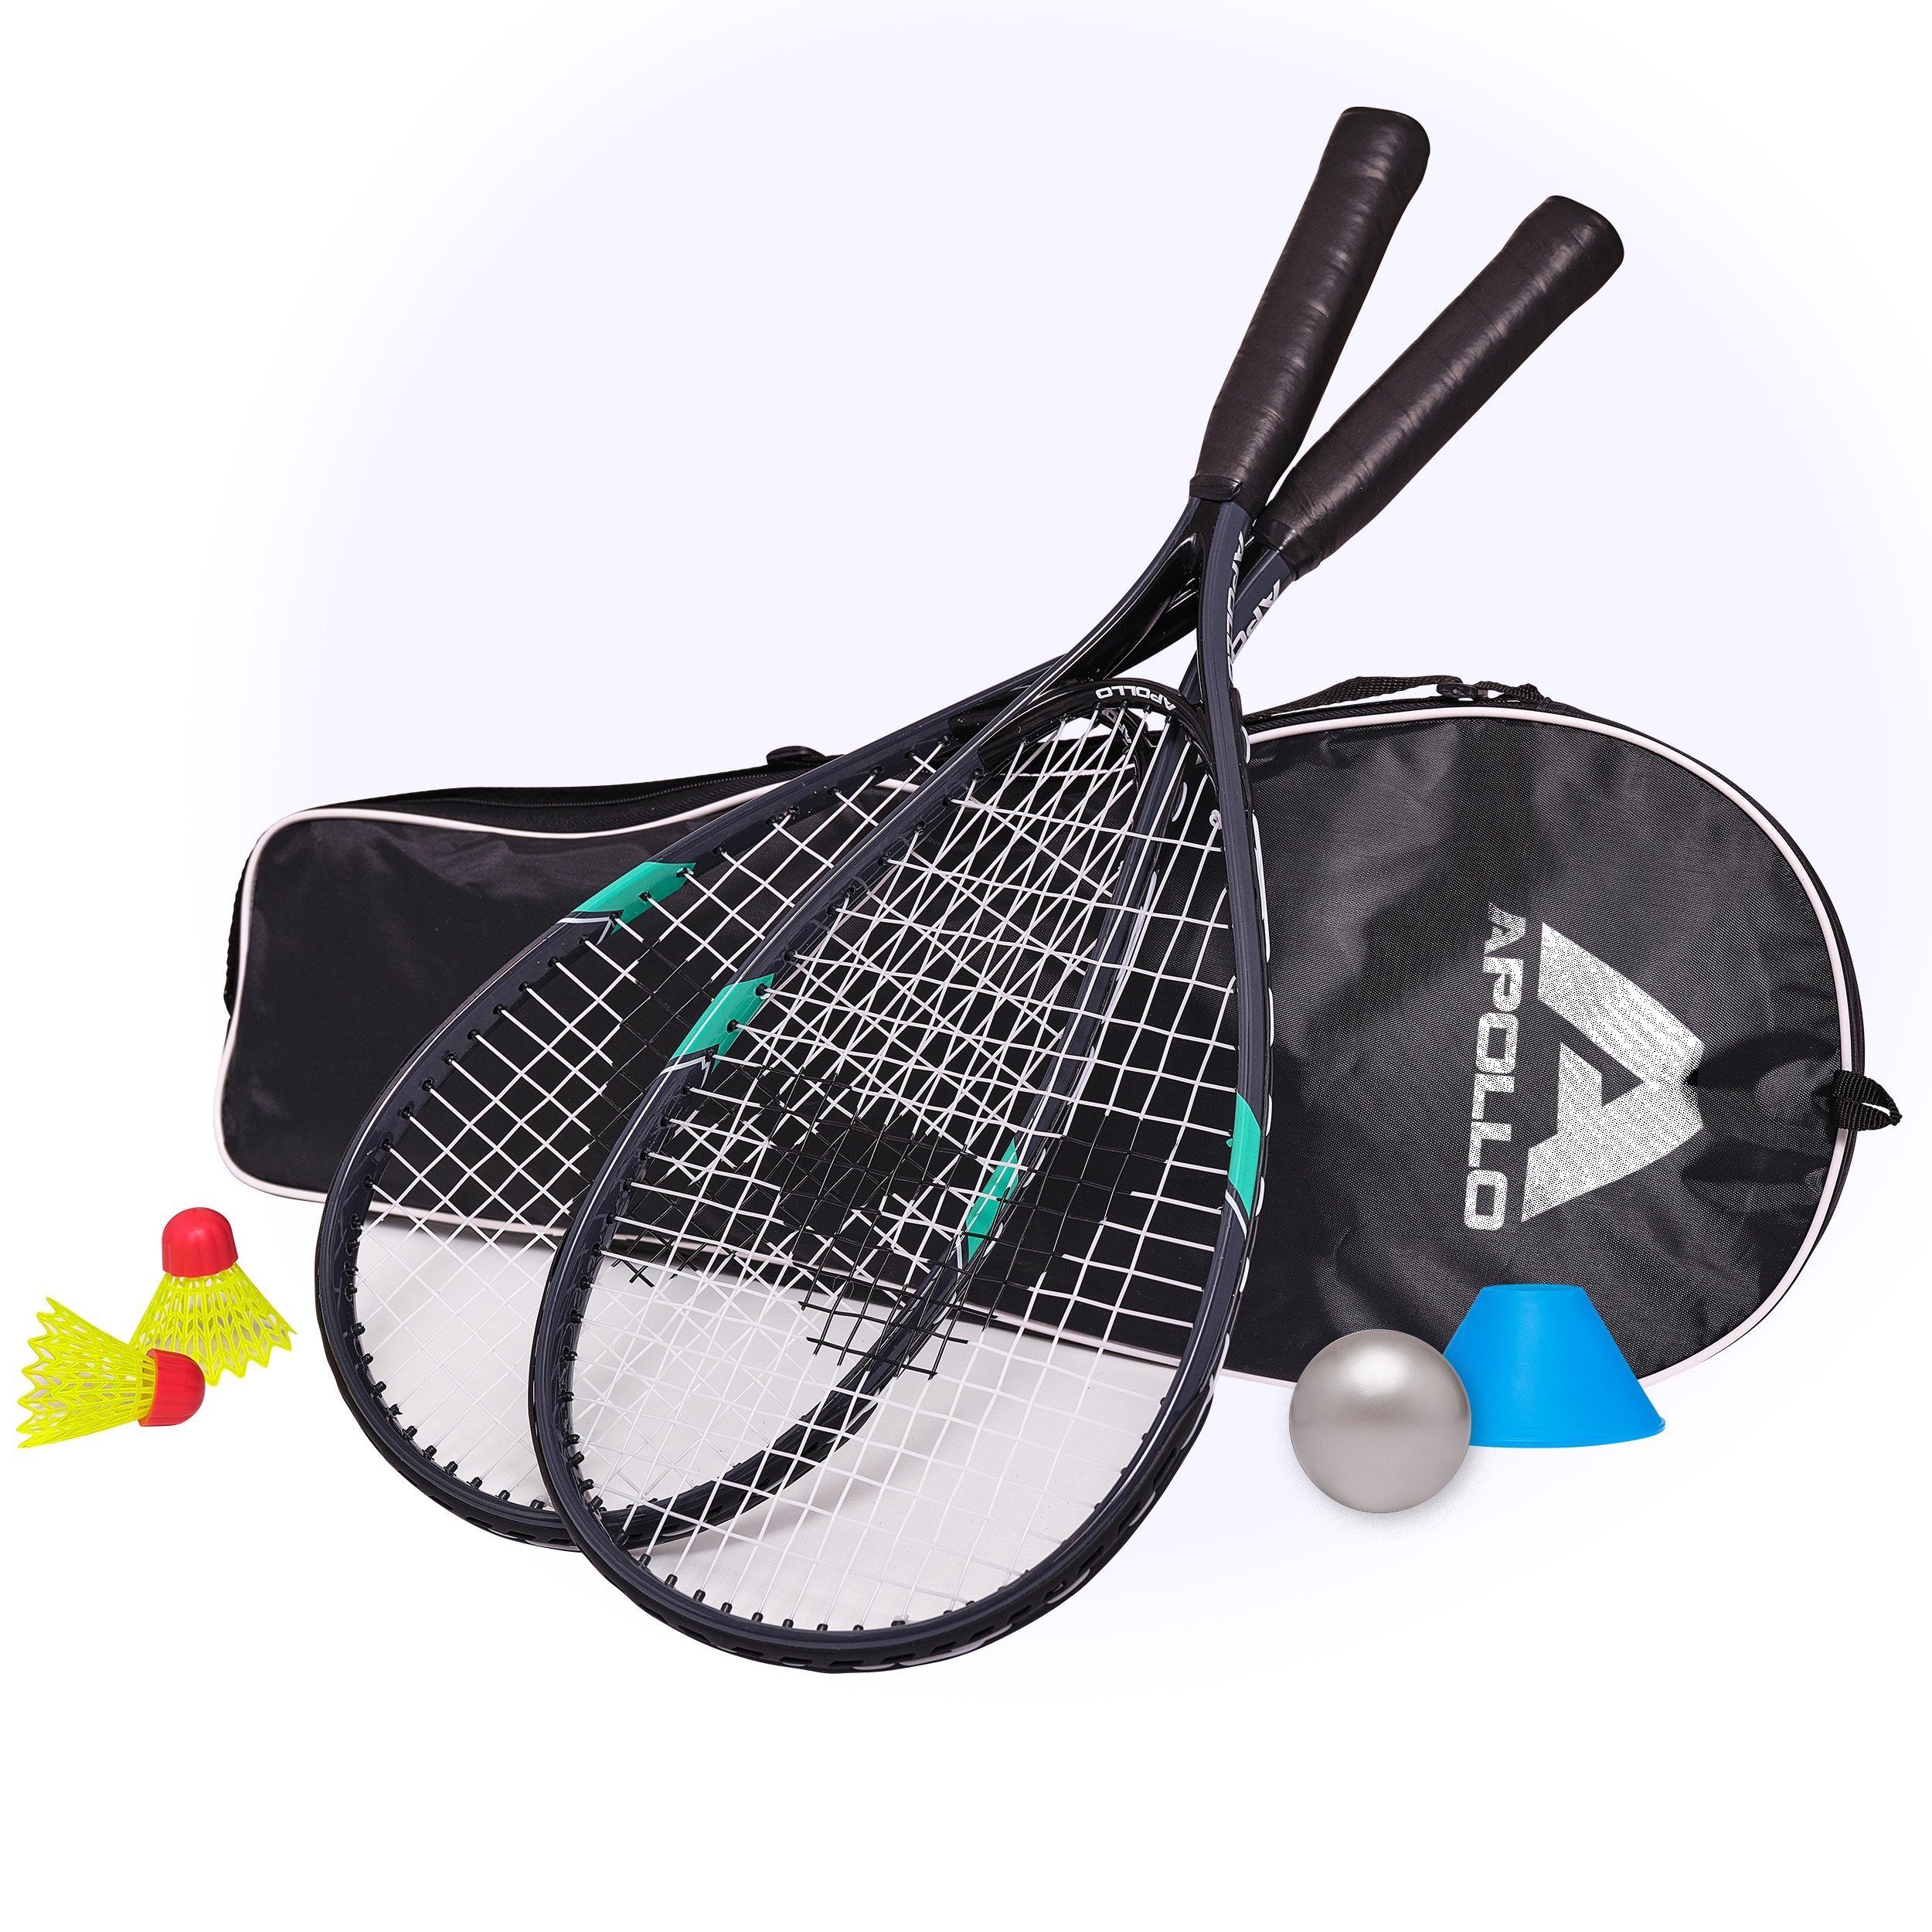 Apollo Speed-Badmintonschläger Badminton Schläger Set Kinder Speed Pro, (Set, inkl. Tragetasche, Federbällen, Schaumball und Hütchen), inkl. Tragetasche, Federbällen, Schaumball und Hütchen Grau/Mint